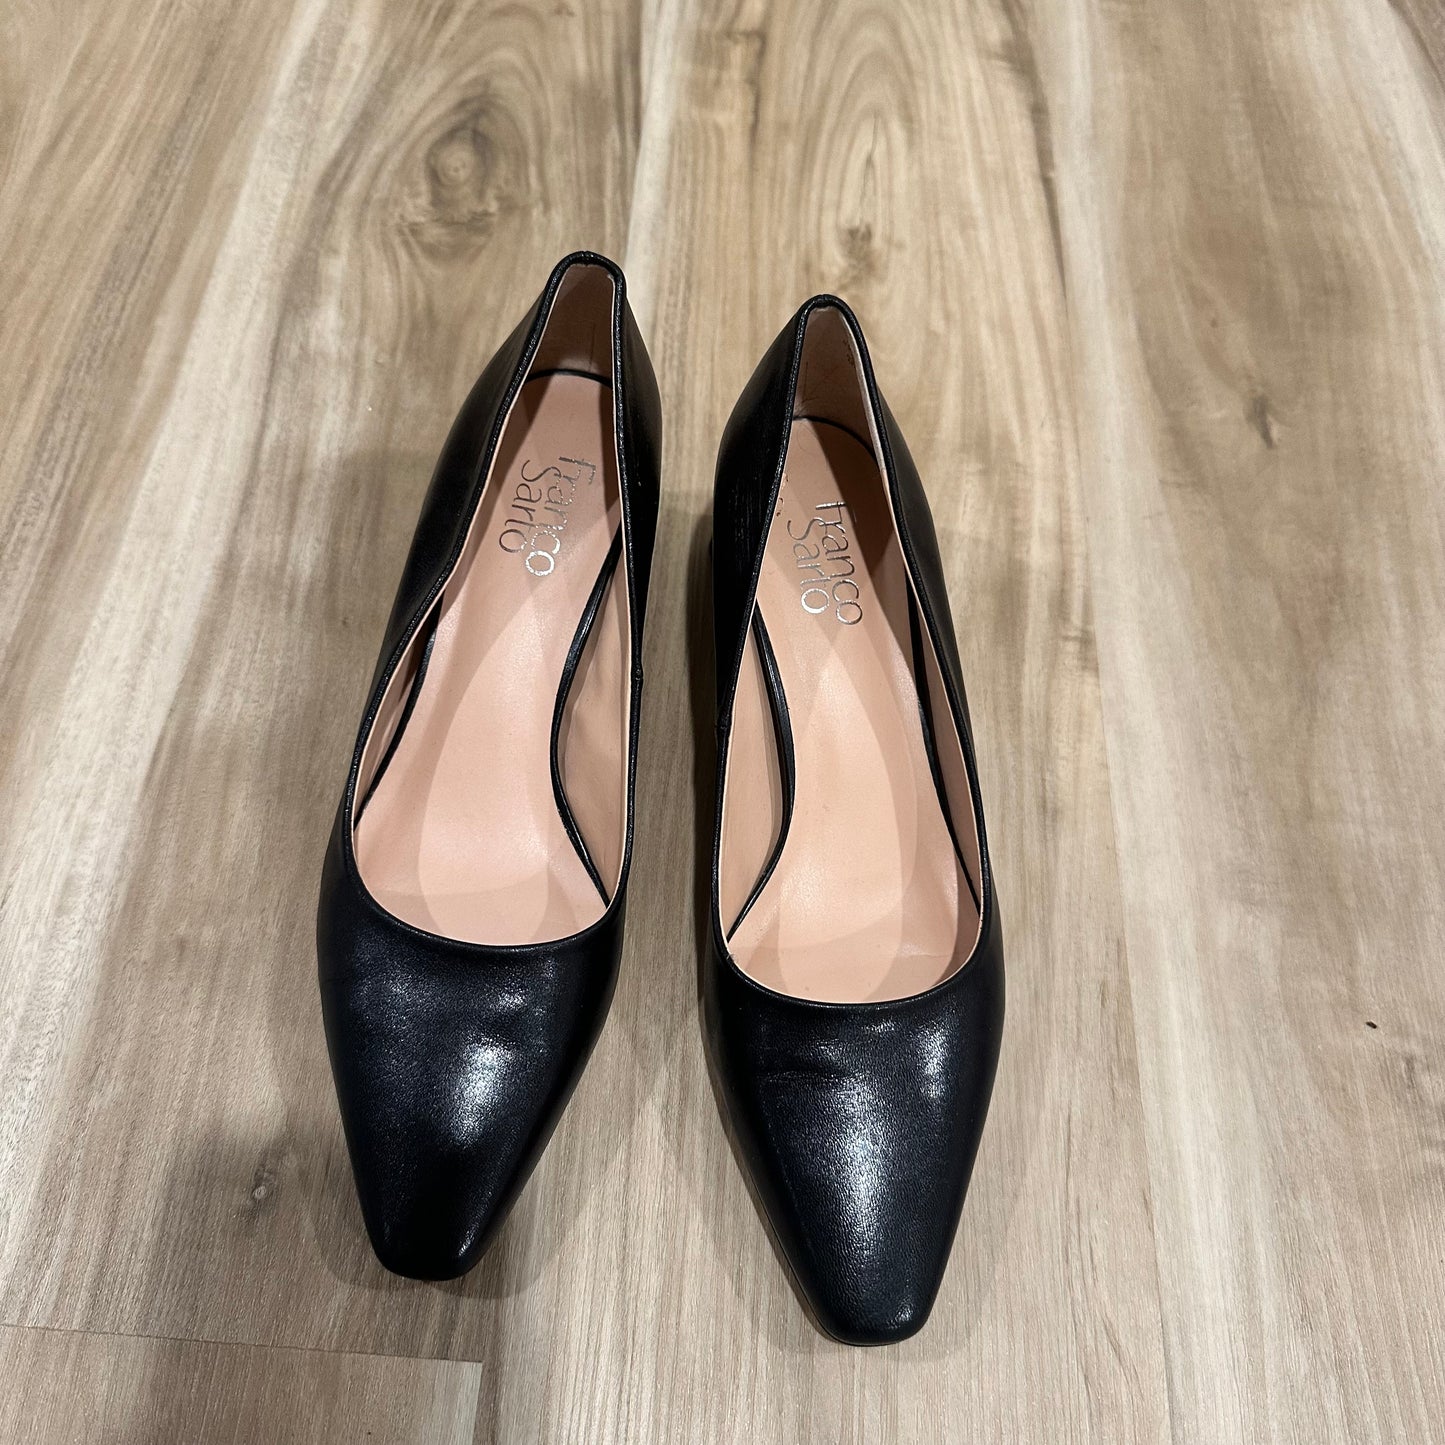 Franco Sarto heels 8.5